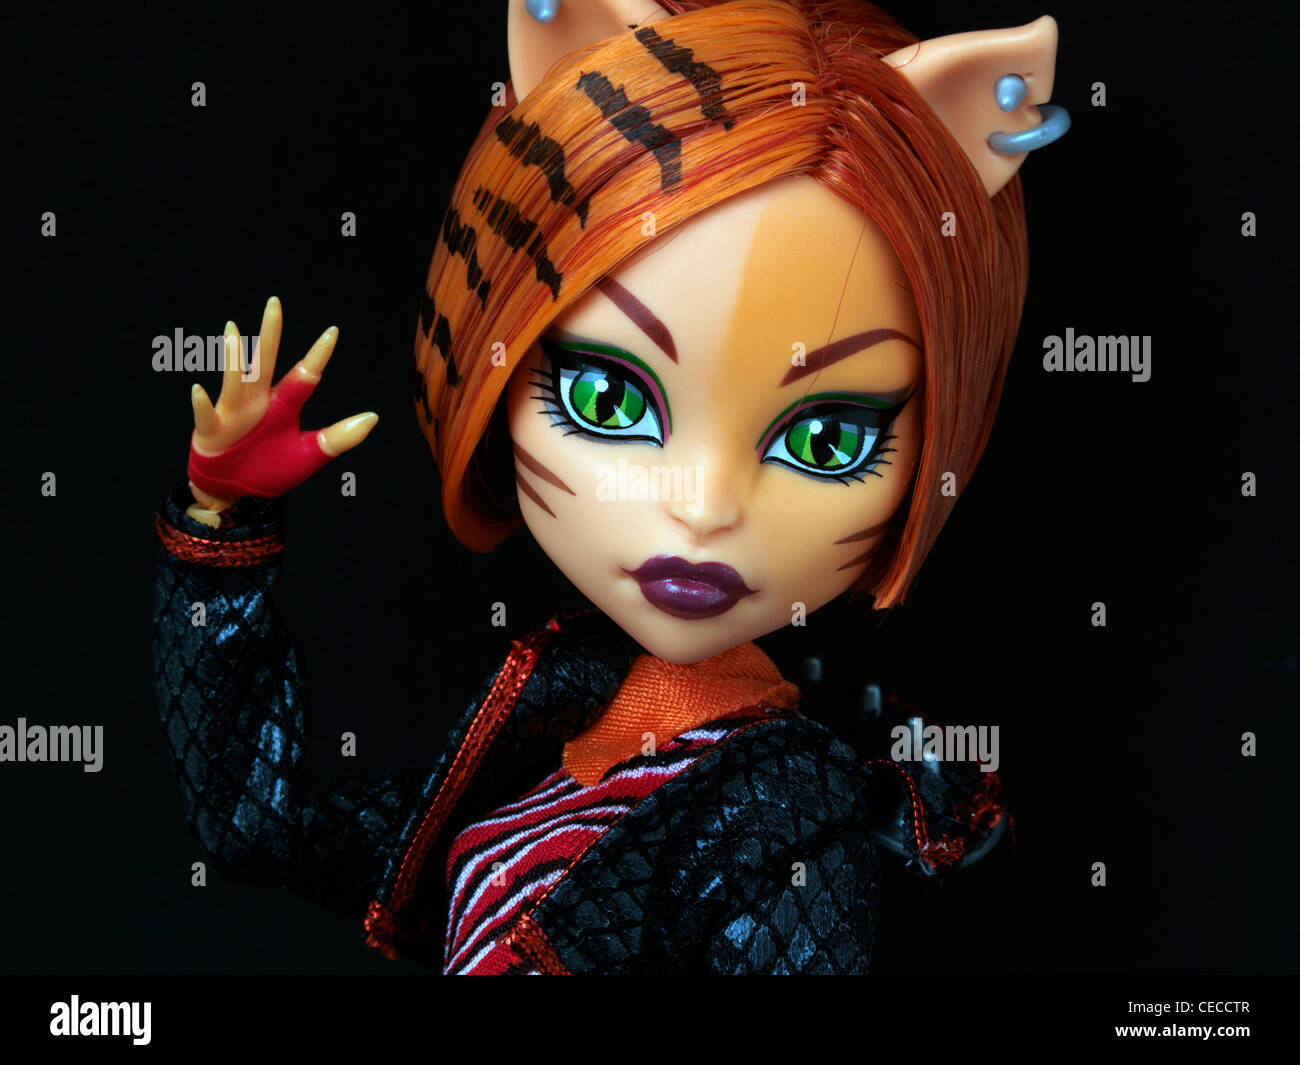 Monster High Puppe Toralei Tochter von einer Werkatze mit Katzenaugen und  Ohren Stockfotografie - Alamy